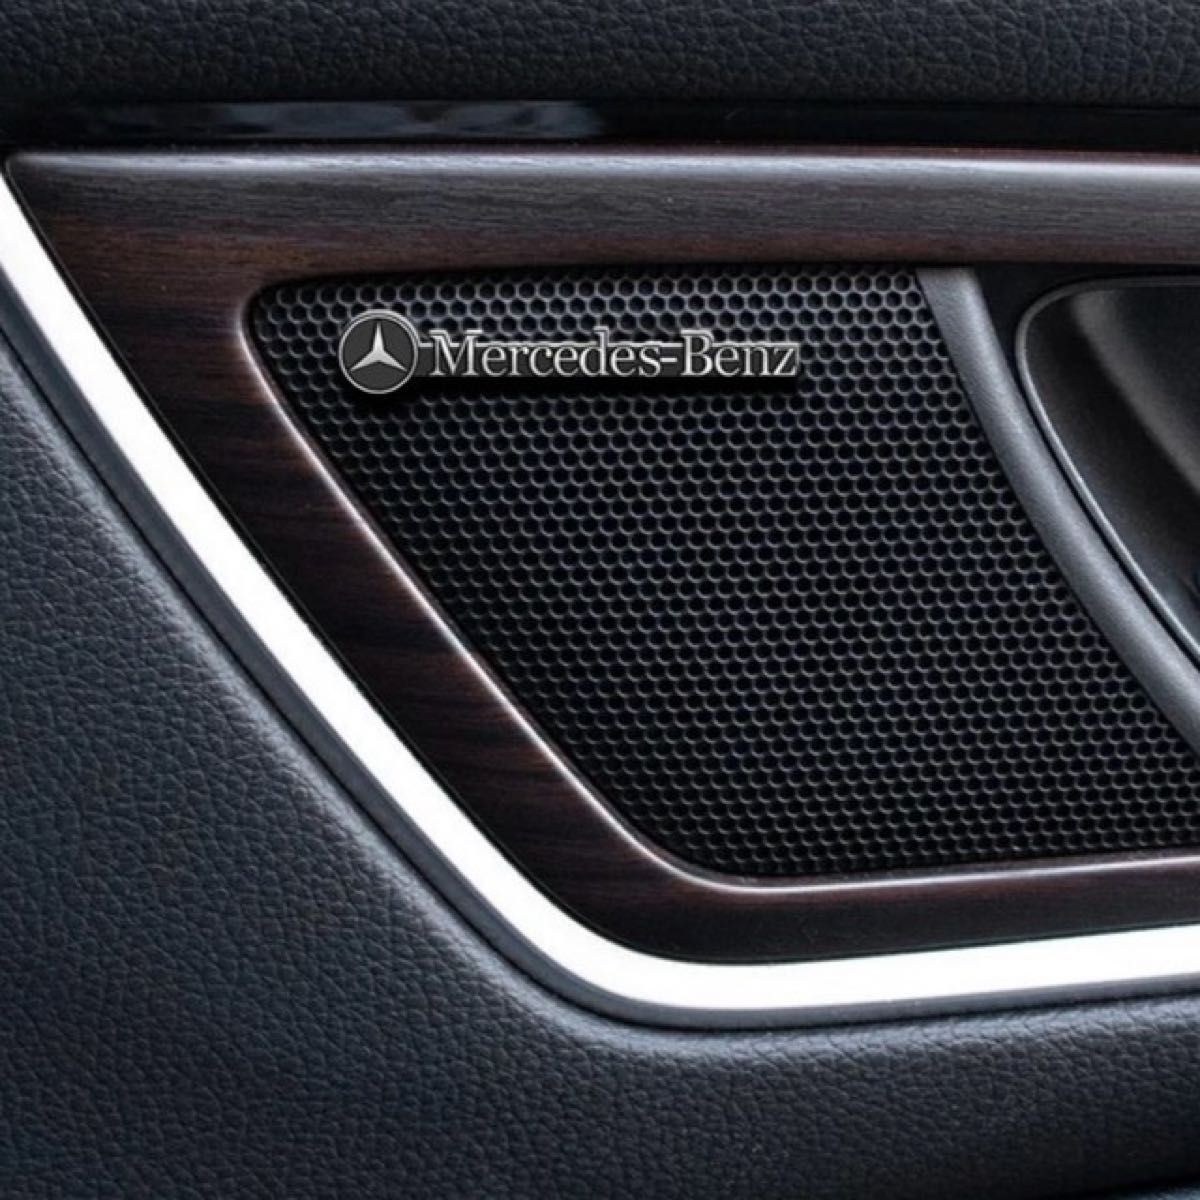 Mercedes Benz メルセデスベンツ AMG アルミ エンブレム プレート バッジ ステッカー シルバー/ブラック e